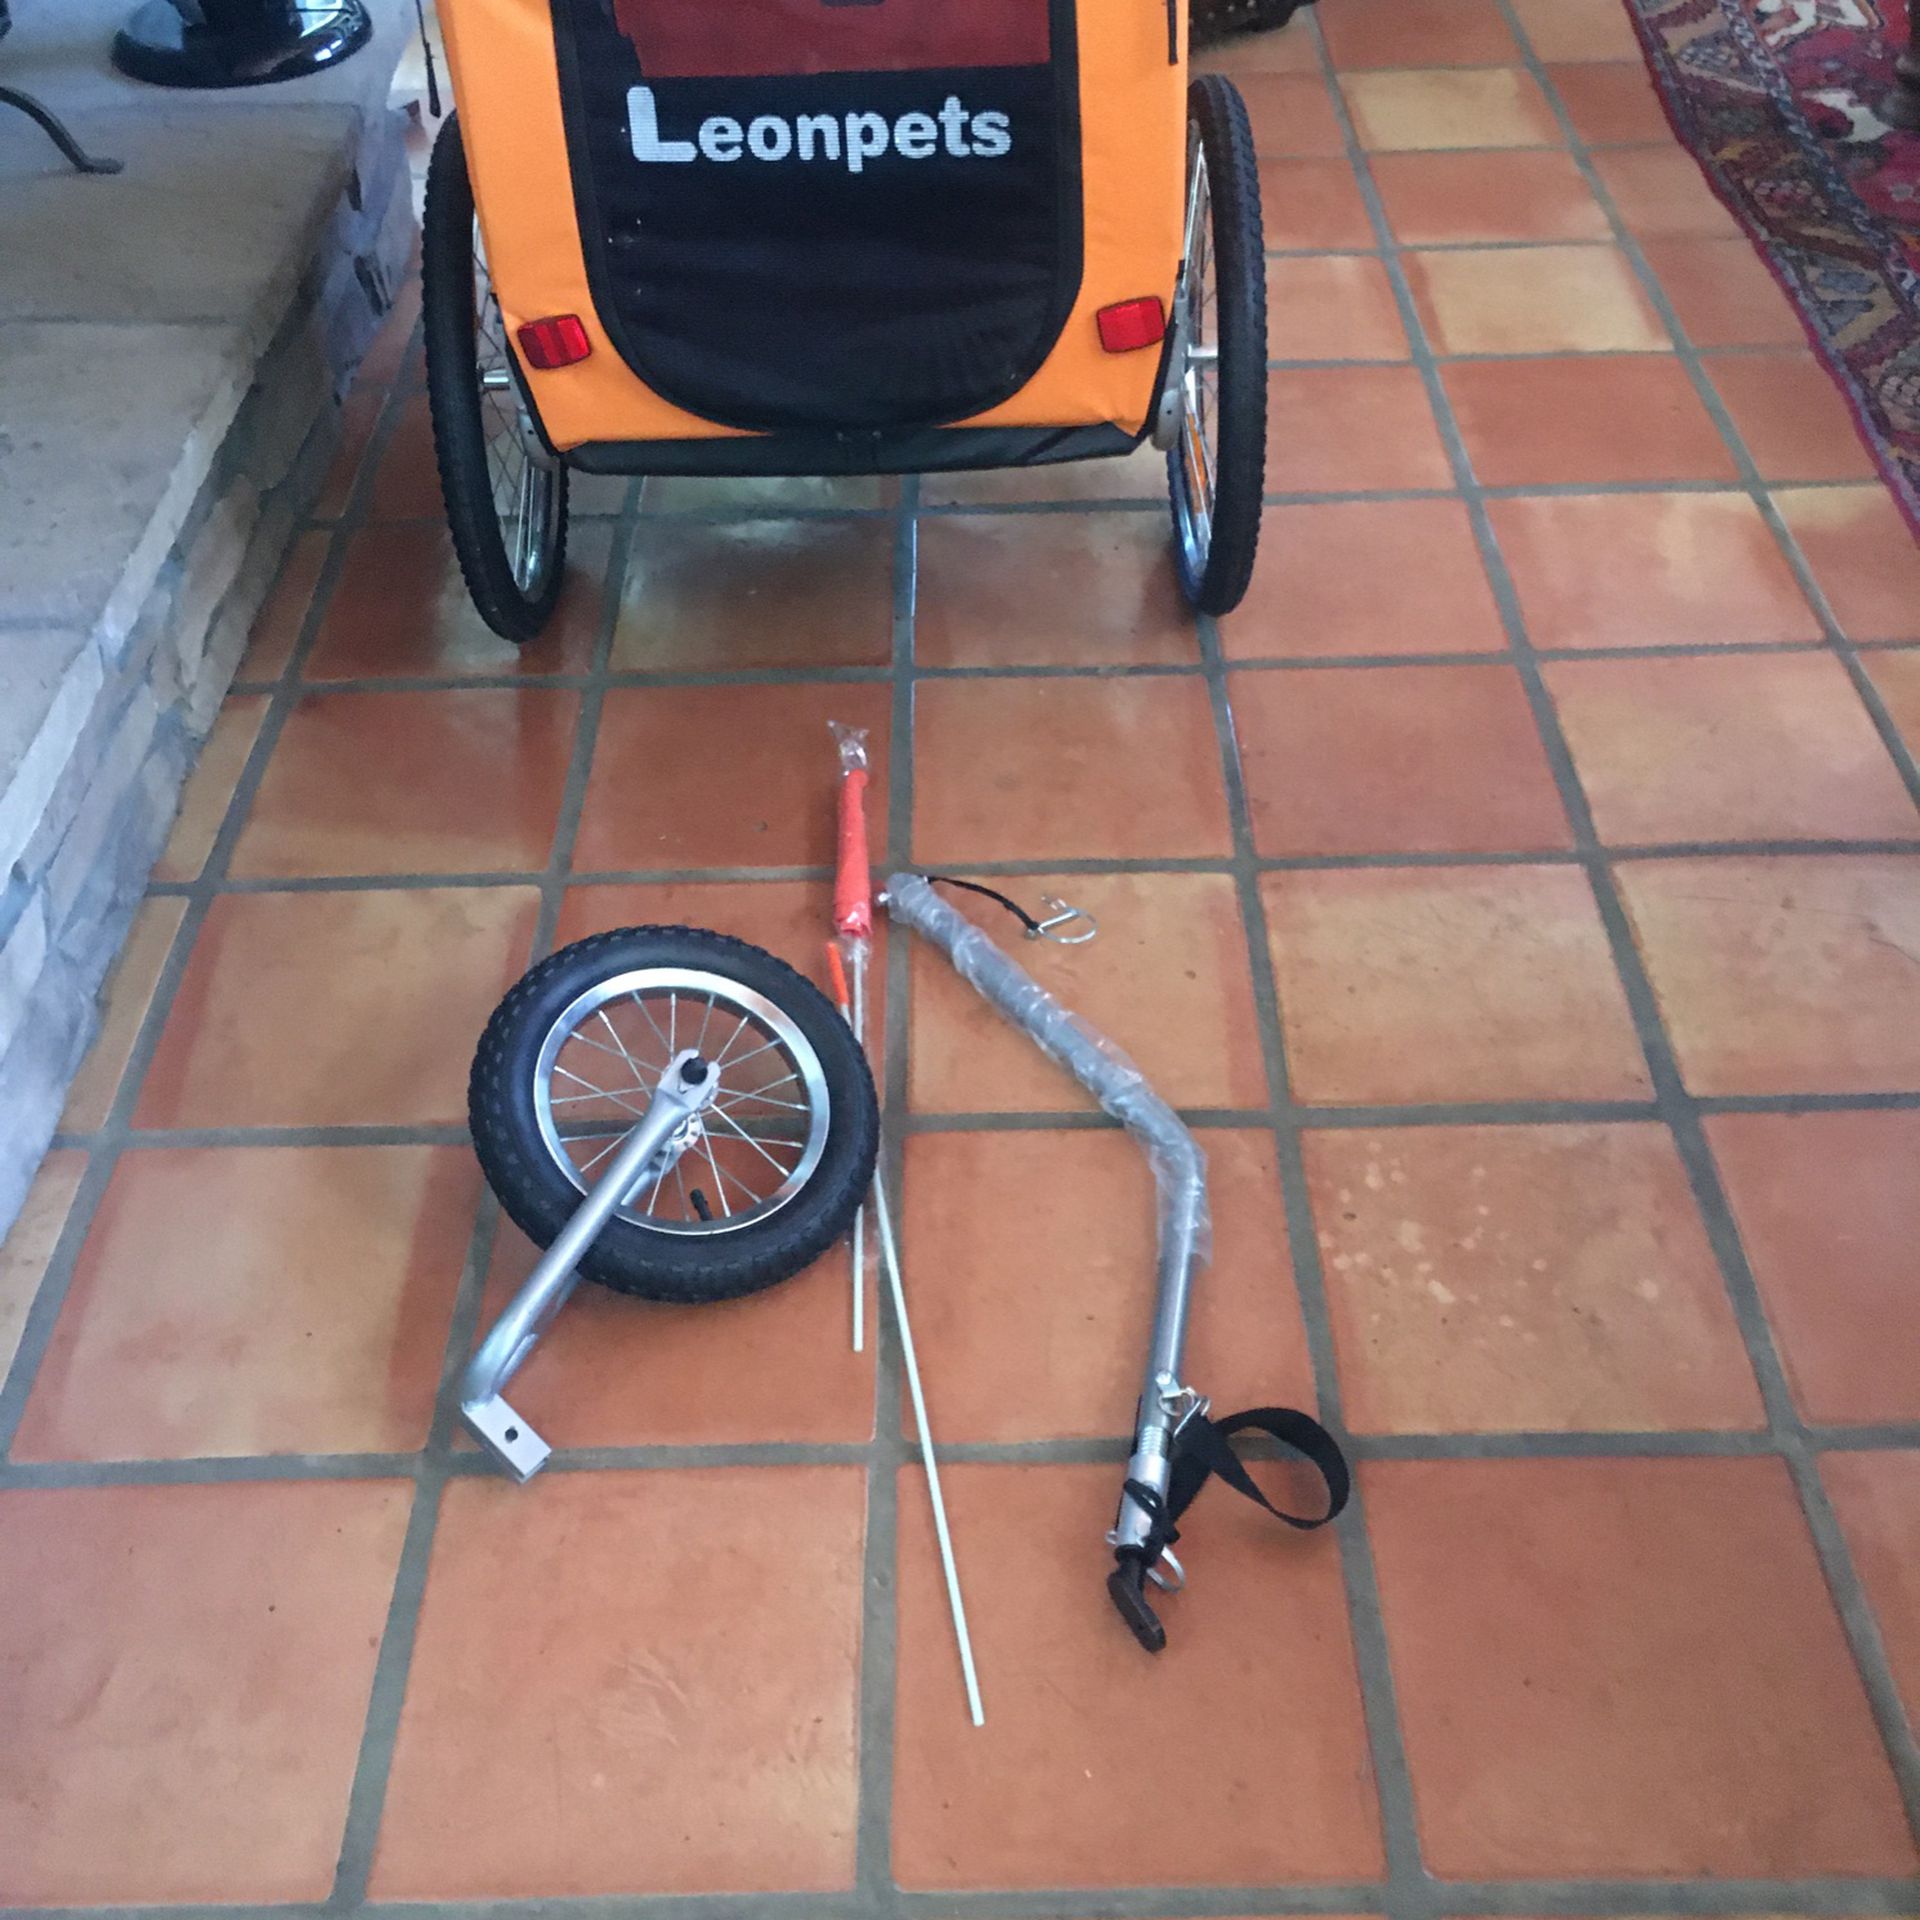 Leon Pets Dog Stroller Or Bike